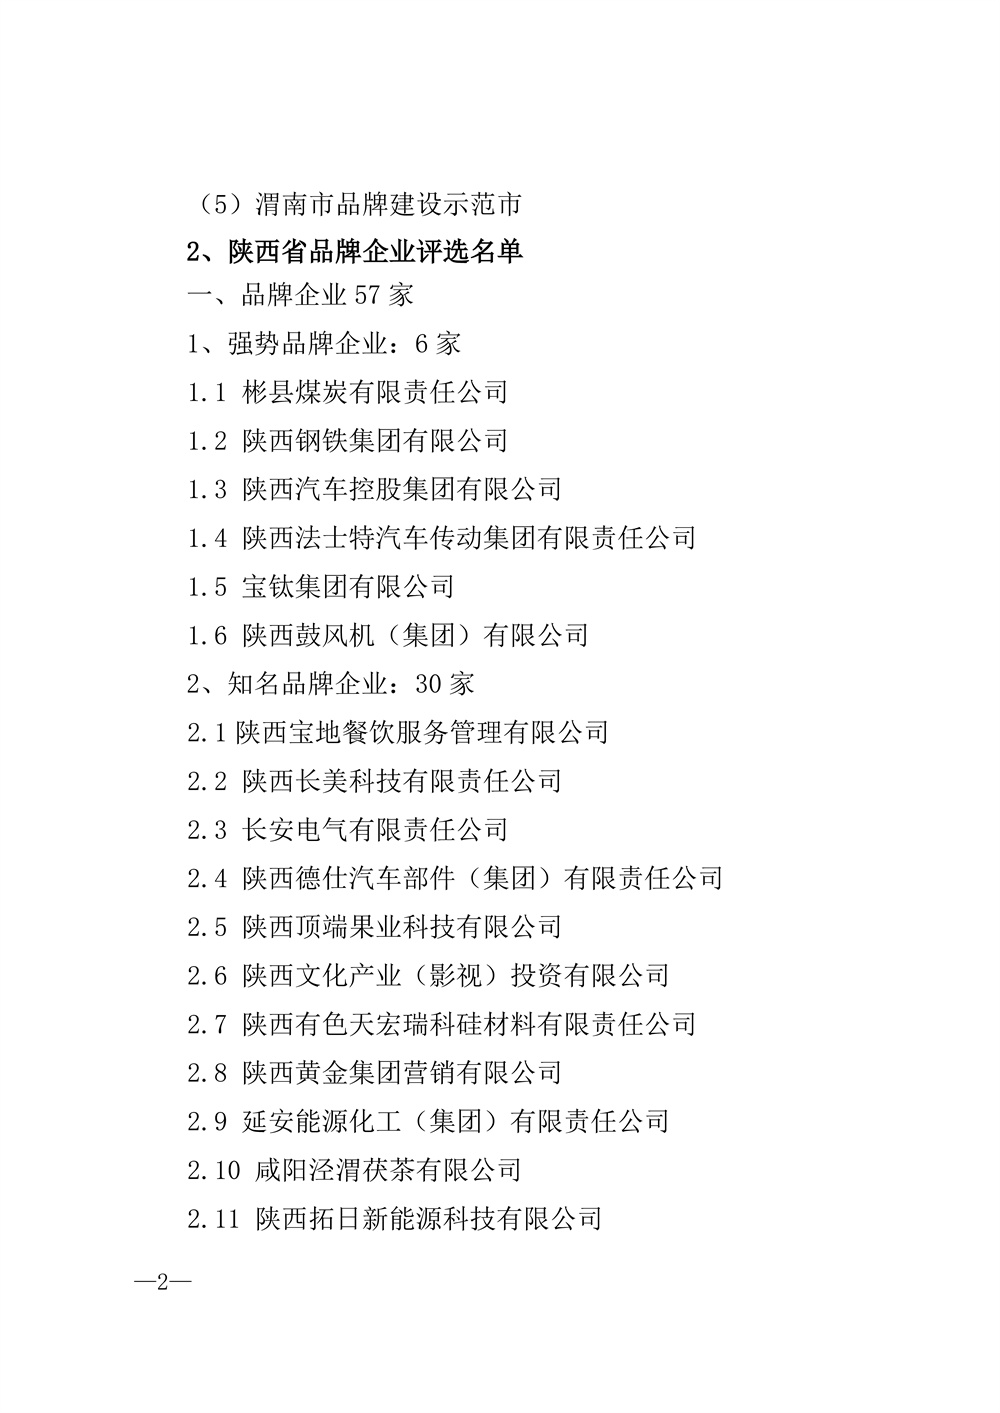 22-52陕西省2021年度品牌评选公示通知_页面_02.jpg